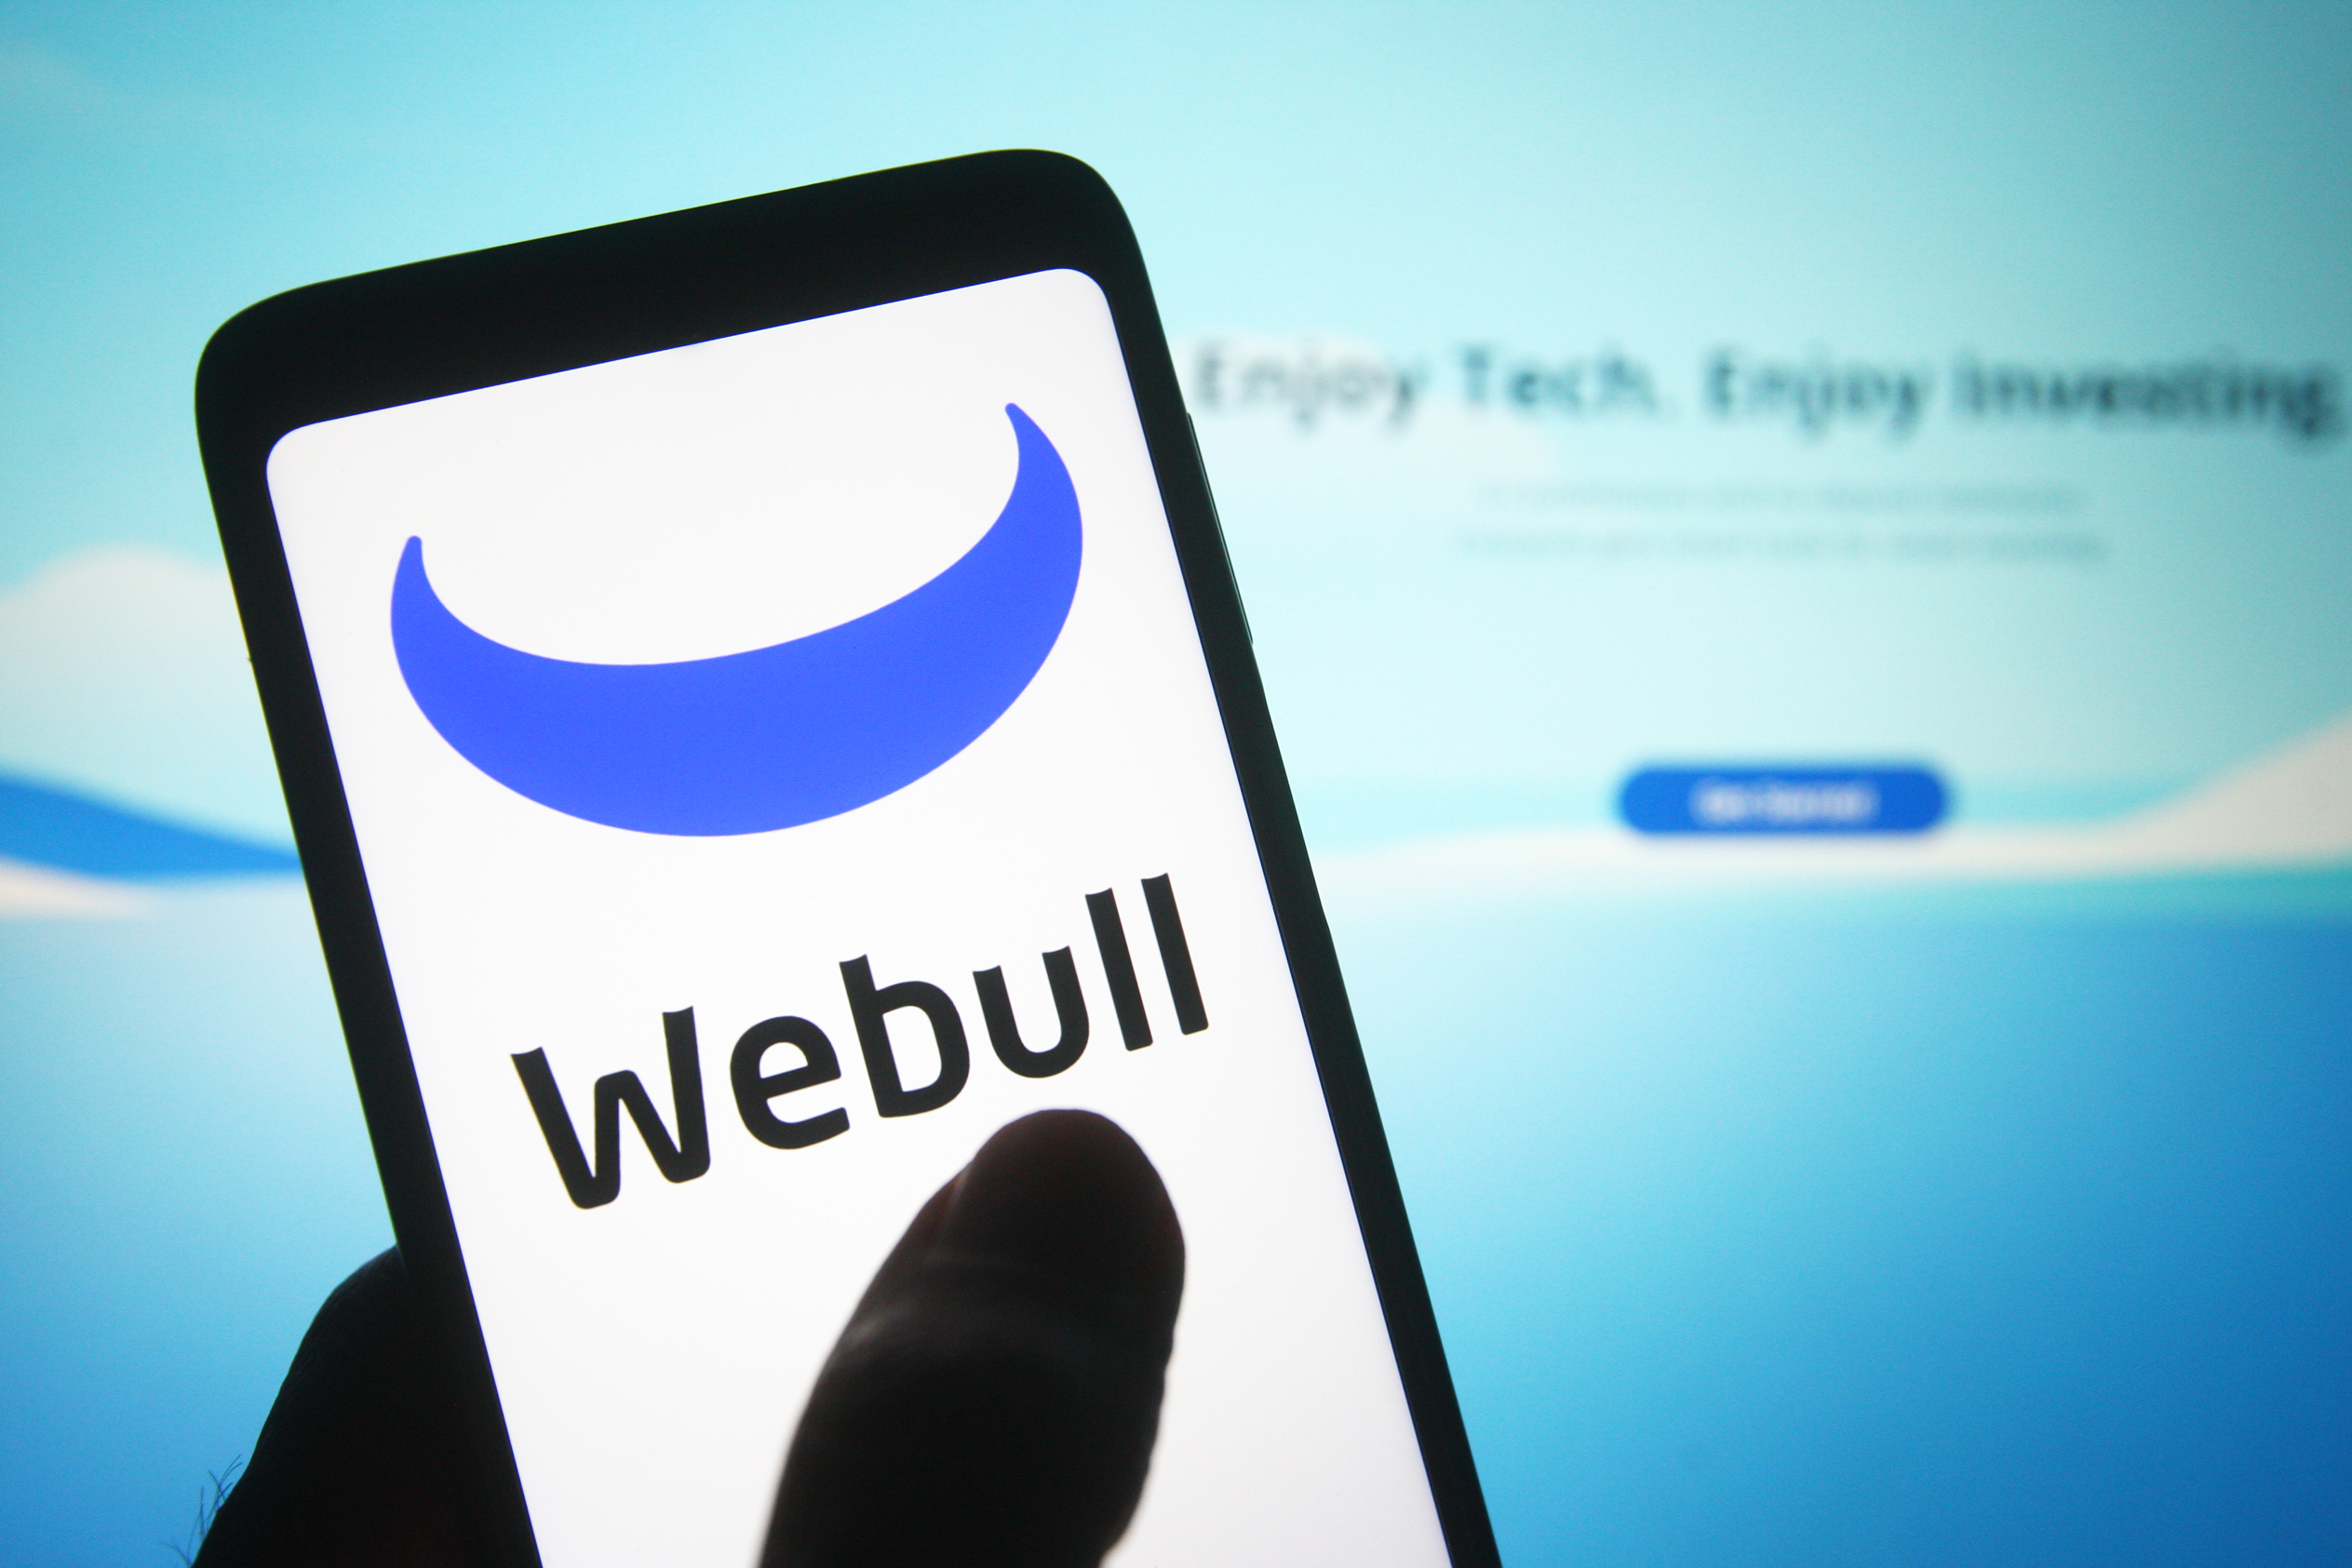 Webull Mobile